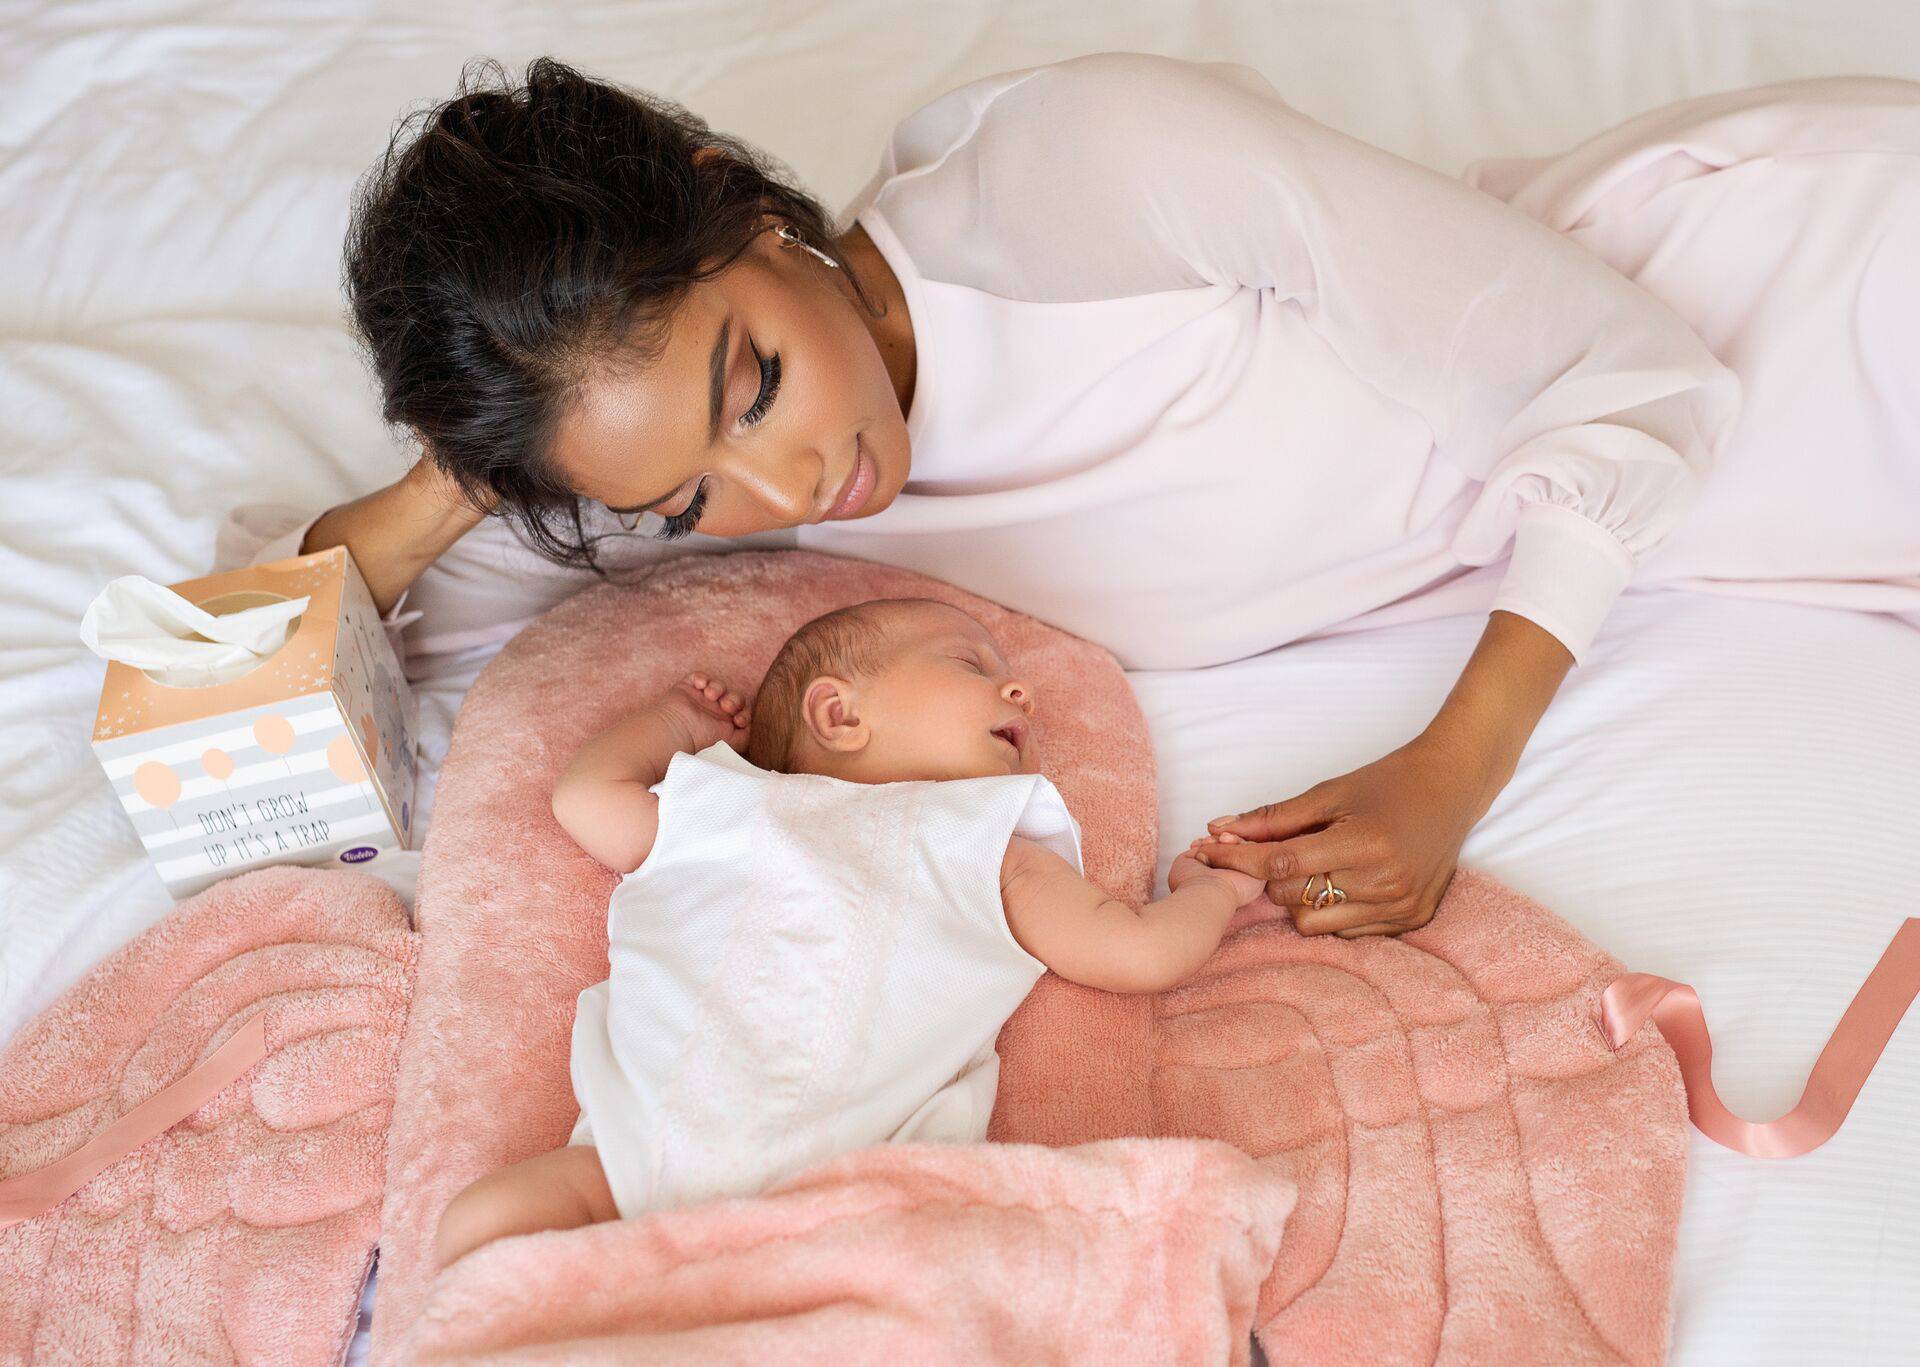 Baby Angle Wings & Violeta -  jastuci koje će svaka beba voljeti